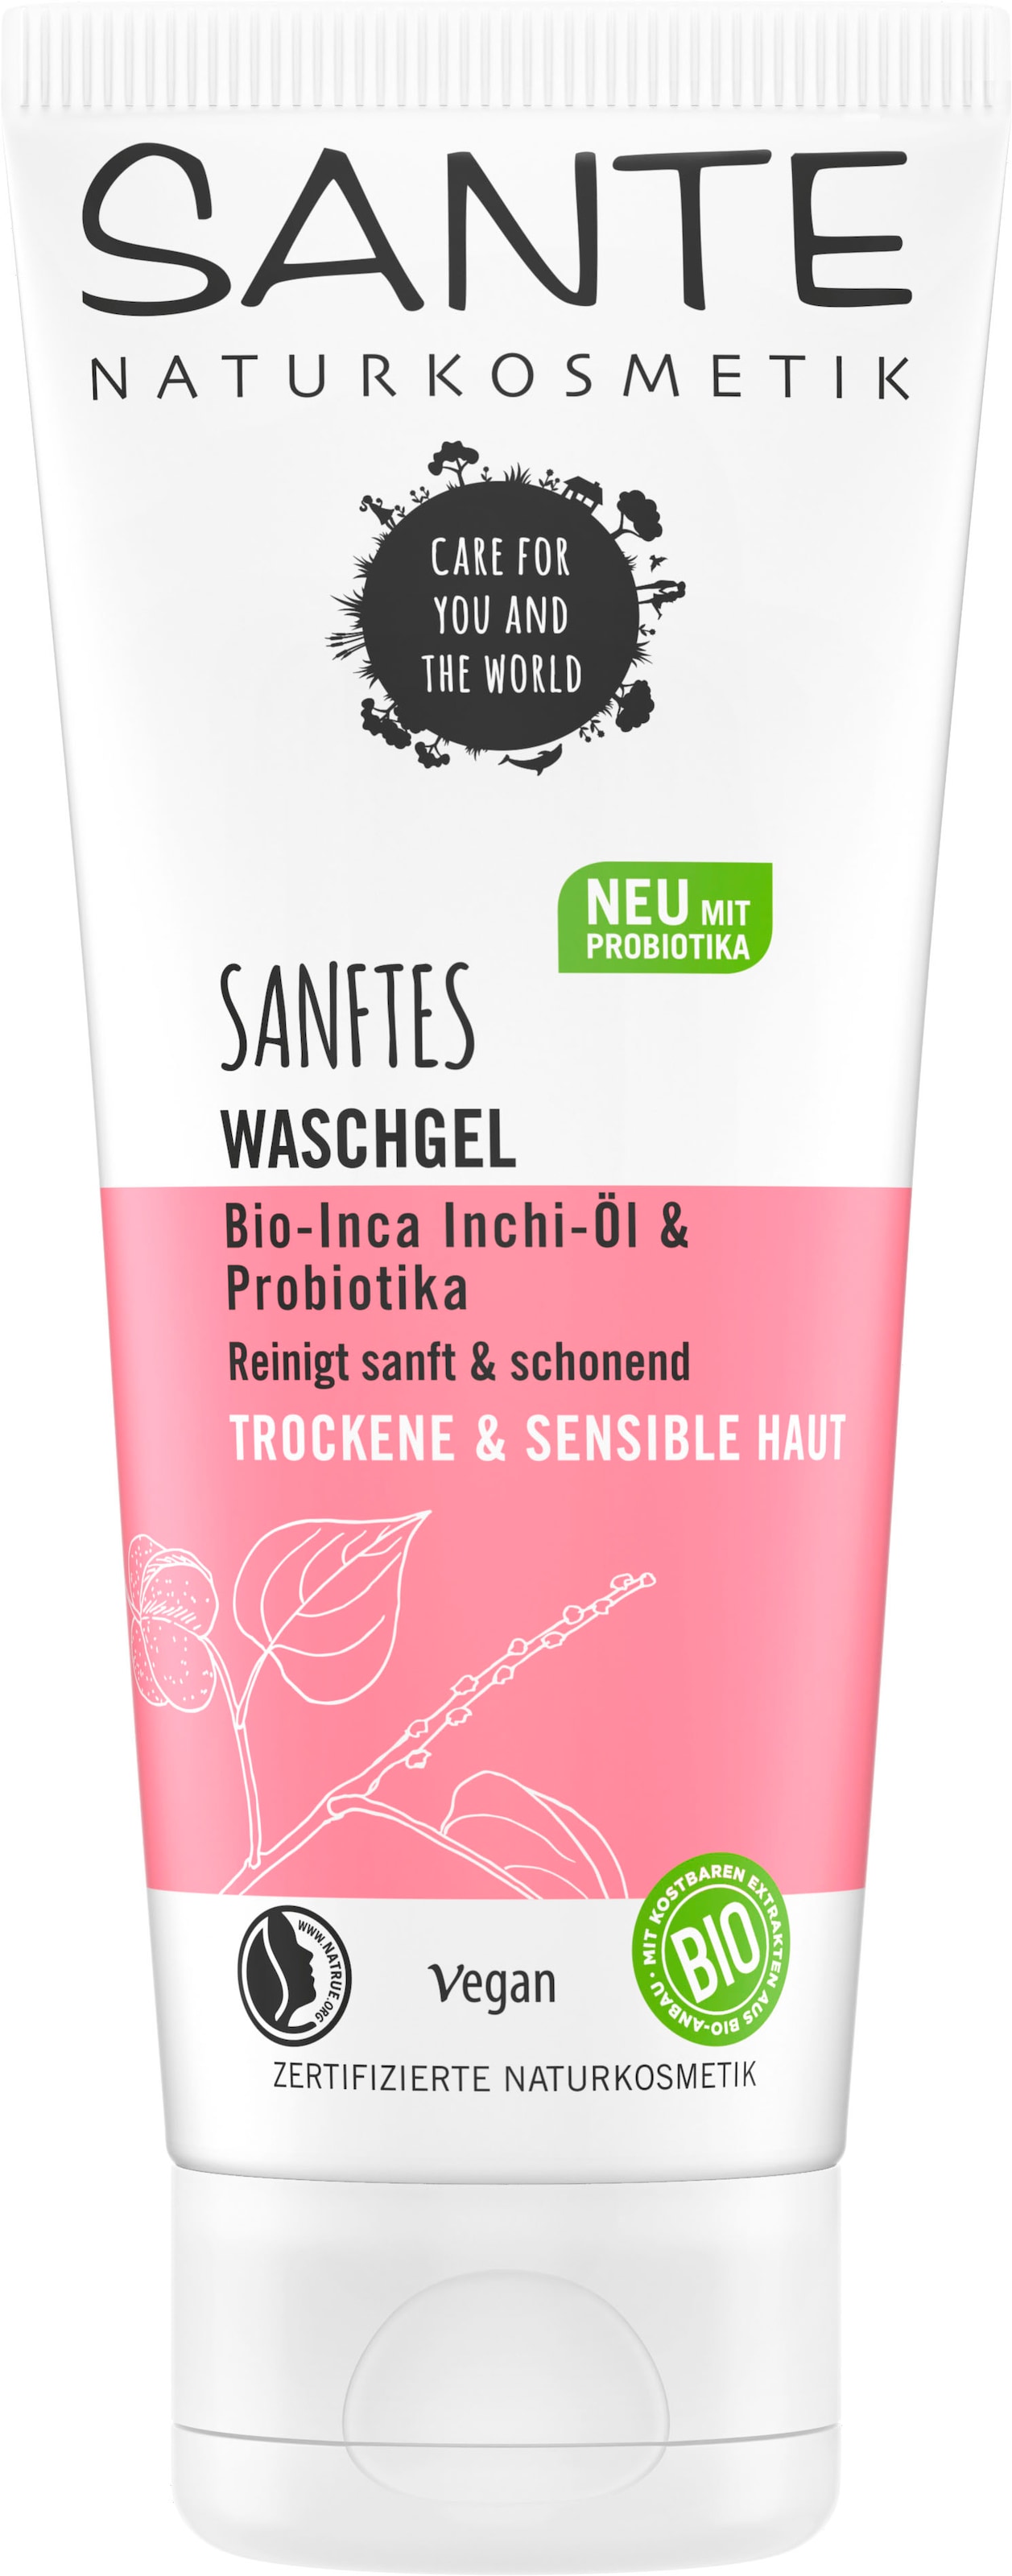 bestellen Shop »Sanftes SANTE Gesichts-Reinigungsfluid Waschgel« Online im OTTO